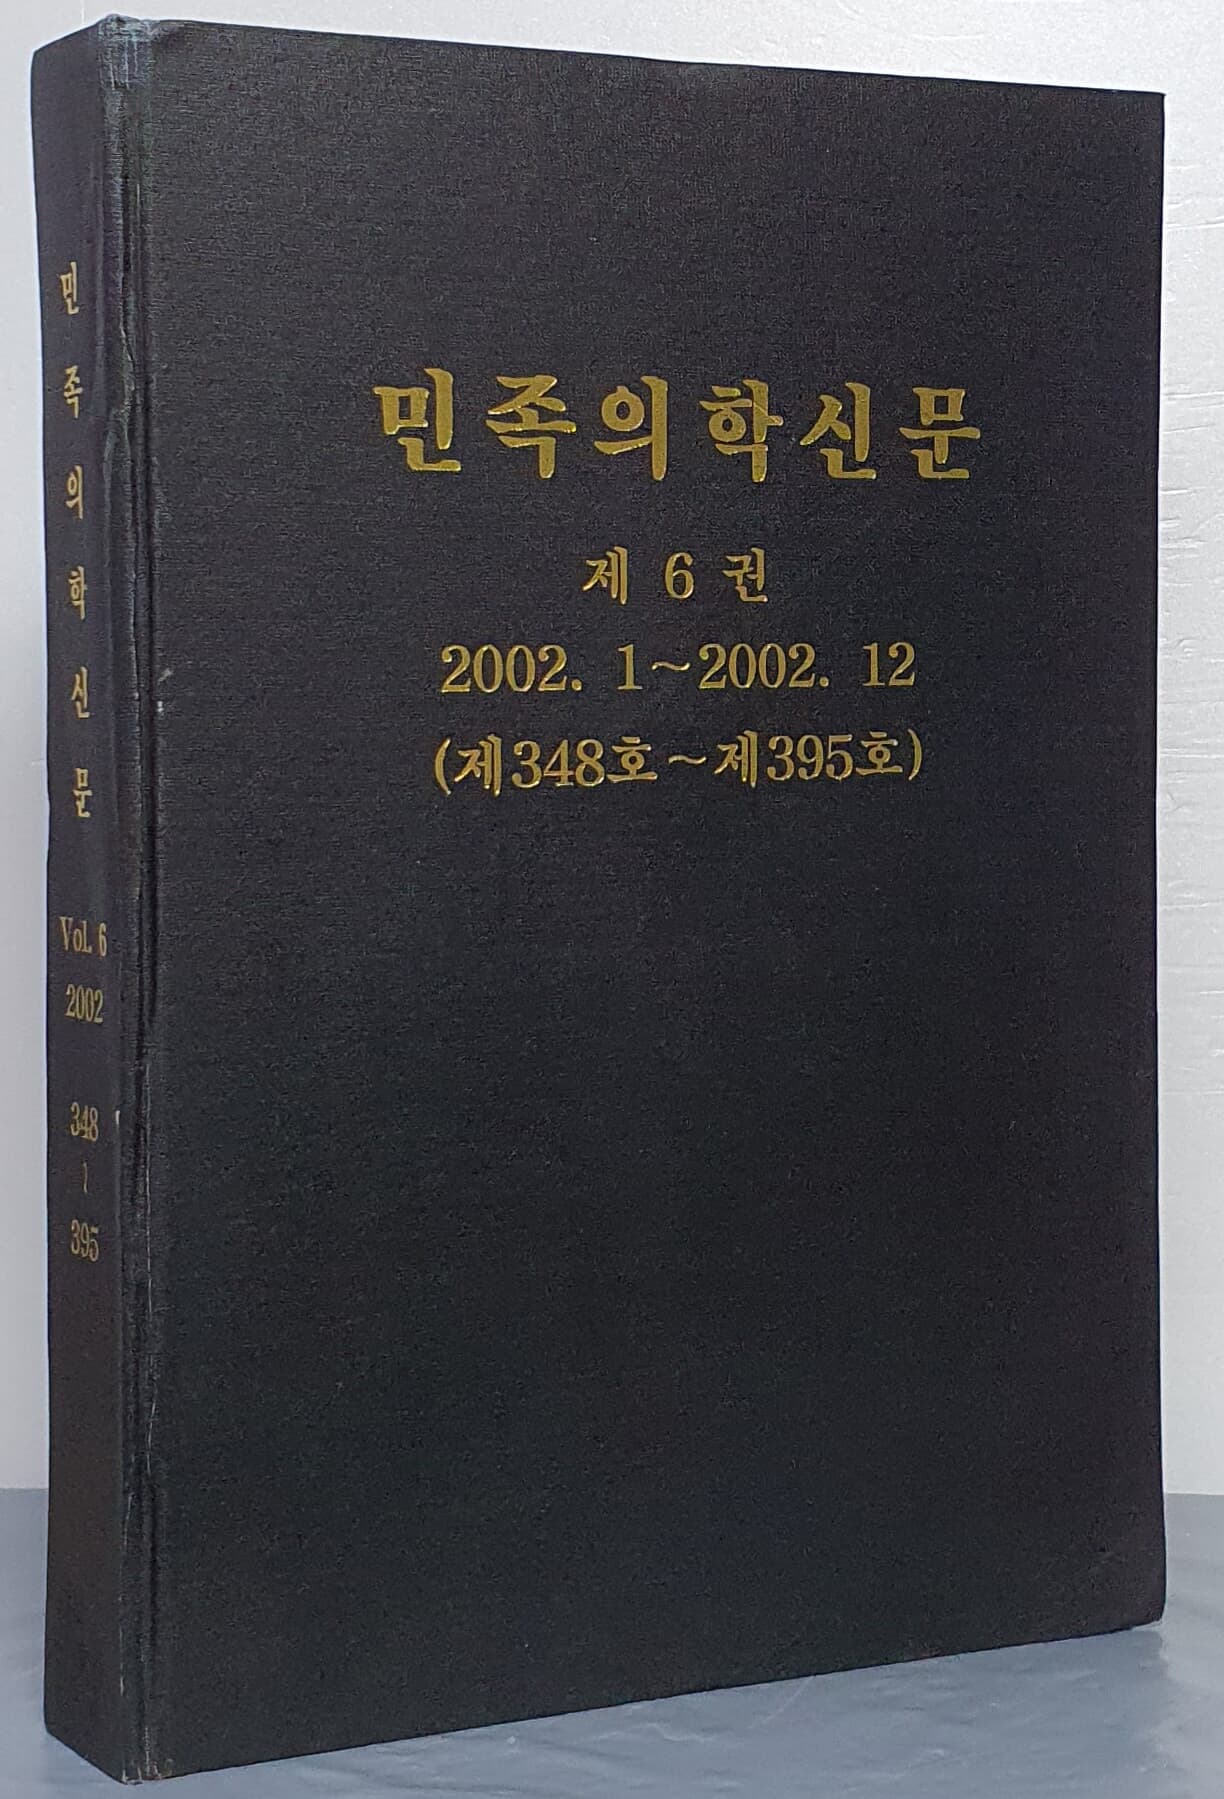 민족의학신문 제6권 2002.1~2002.12 (제348호~제395호)